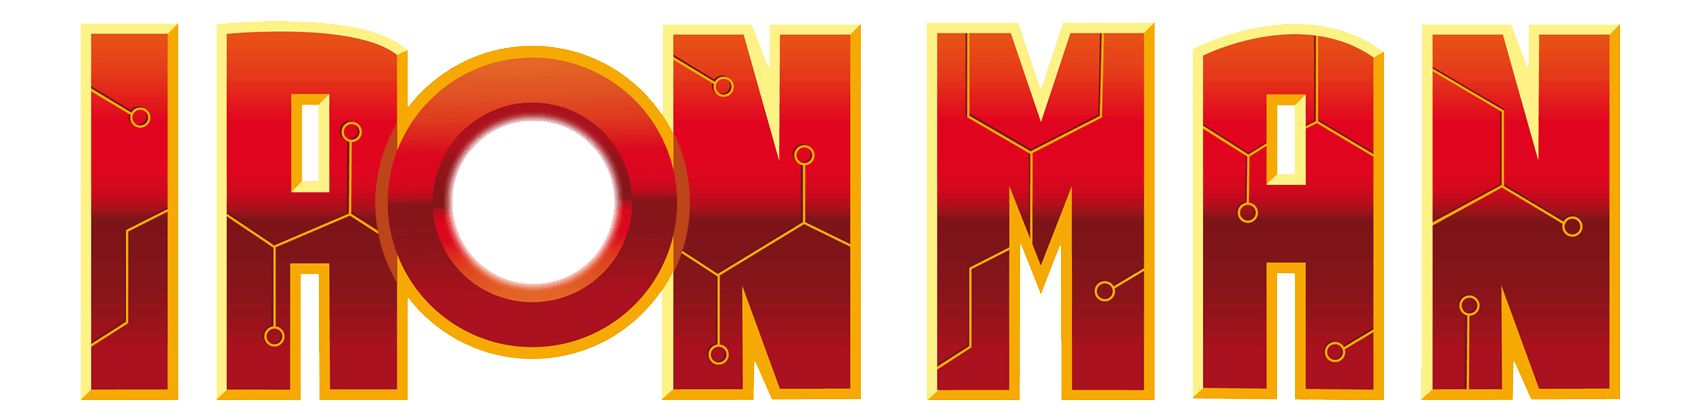 Iron Man Logo - Ironman PNG images free download